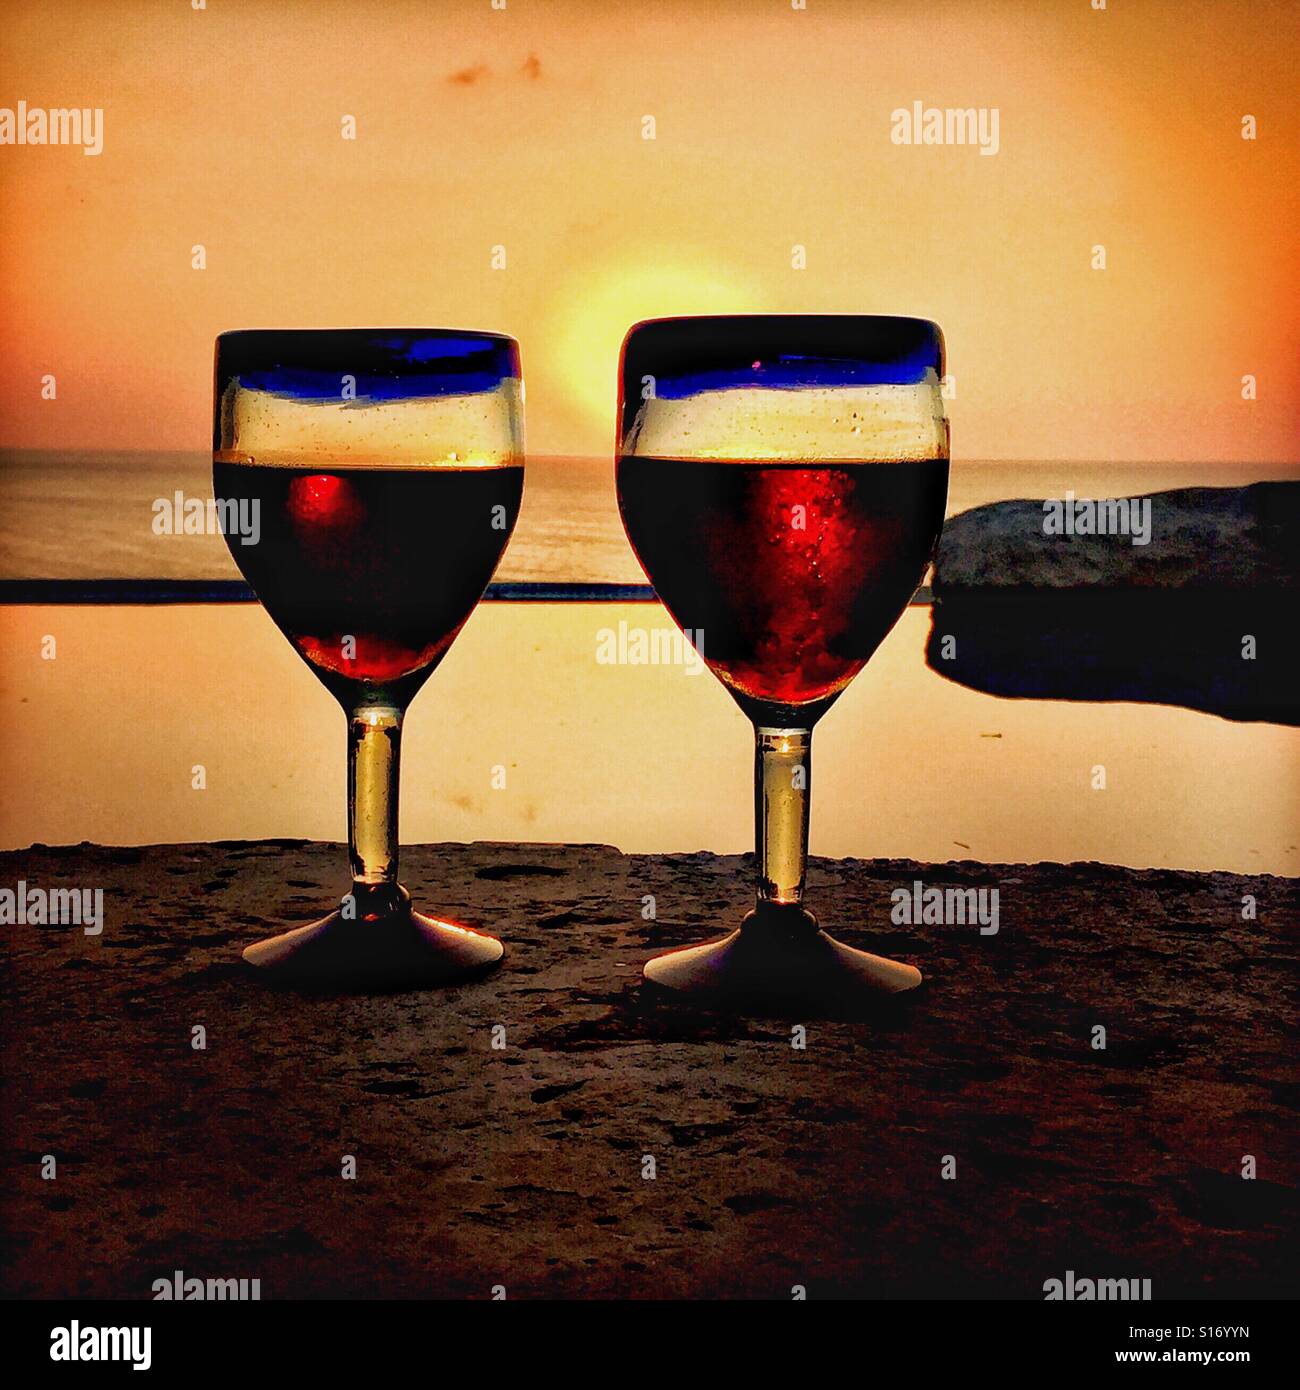 Soufflé à la mexicaine deux paire de lunettes bleu rempli de vin rouge situé en face d'une piscine à débordement avec le soleil sur l'océan Pacifique dans l'arrière-plan dans le Nayarit, Mexique. Banque D'Images